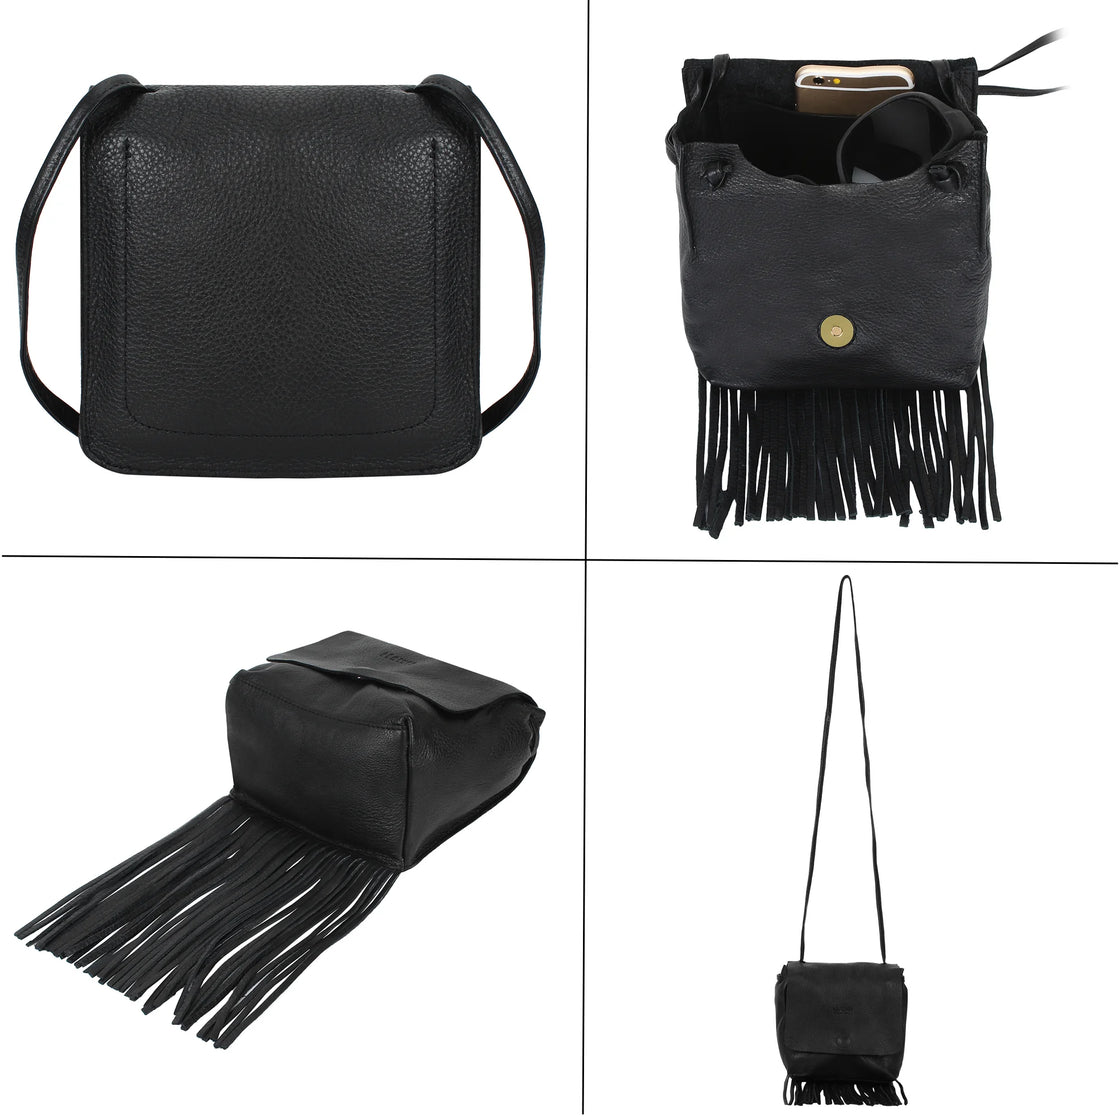 Fringed leather bag, boho handbag , handmade fringed purse – Thunder Rose  Leather